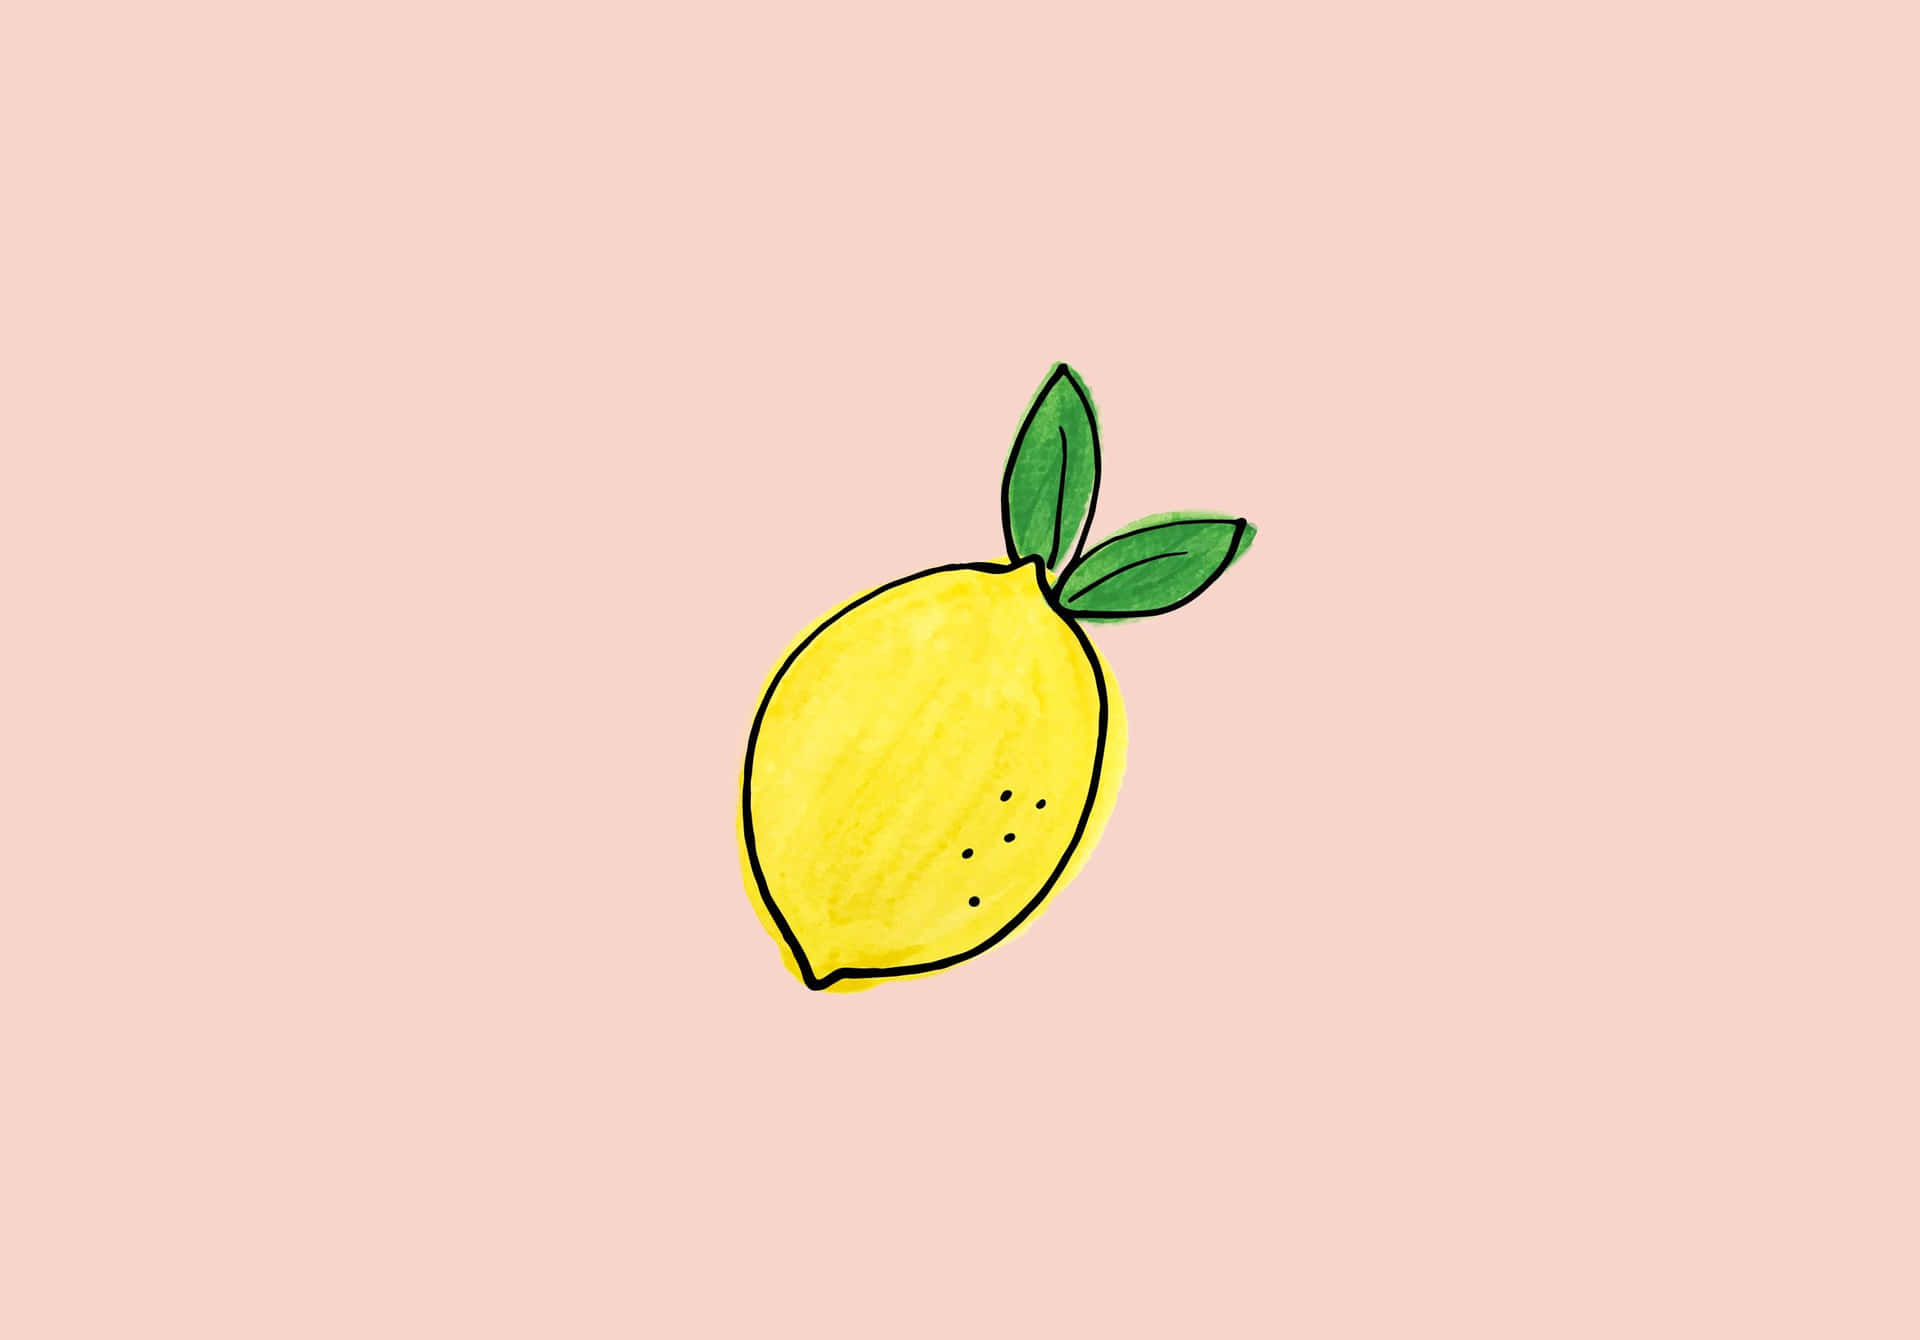 Chia sẻ hơn 58 về hình nền lemon hay nhất  cdgdbentreeduvn